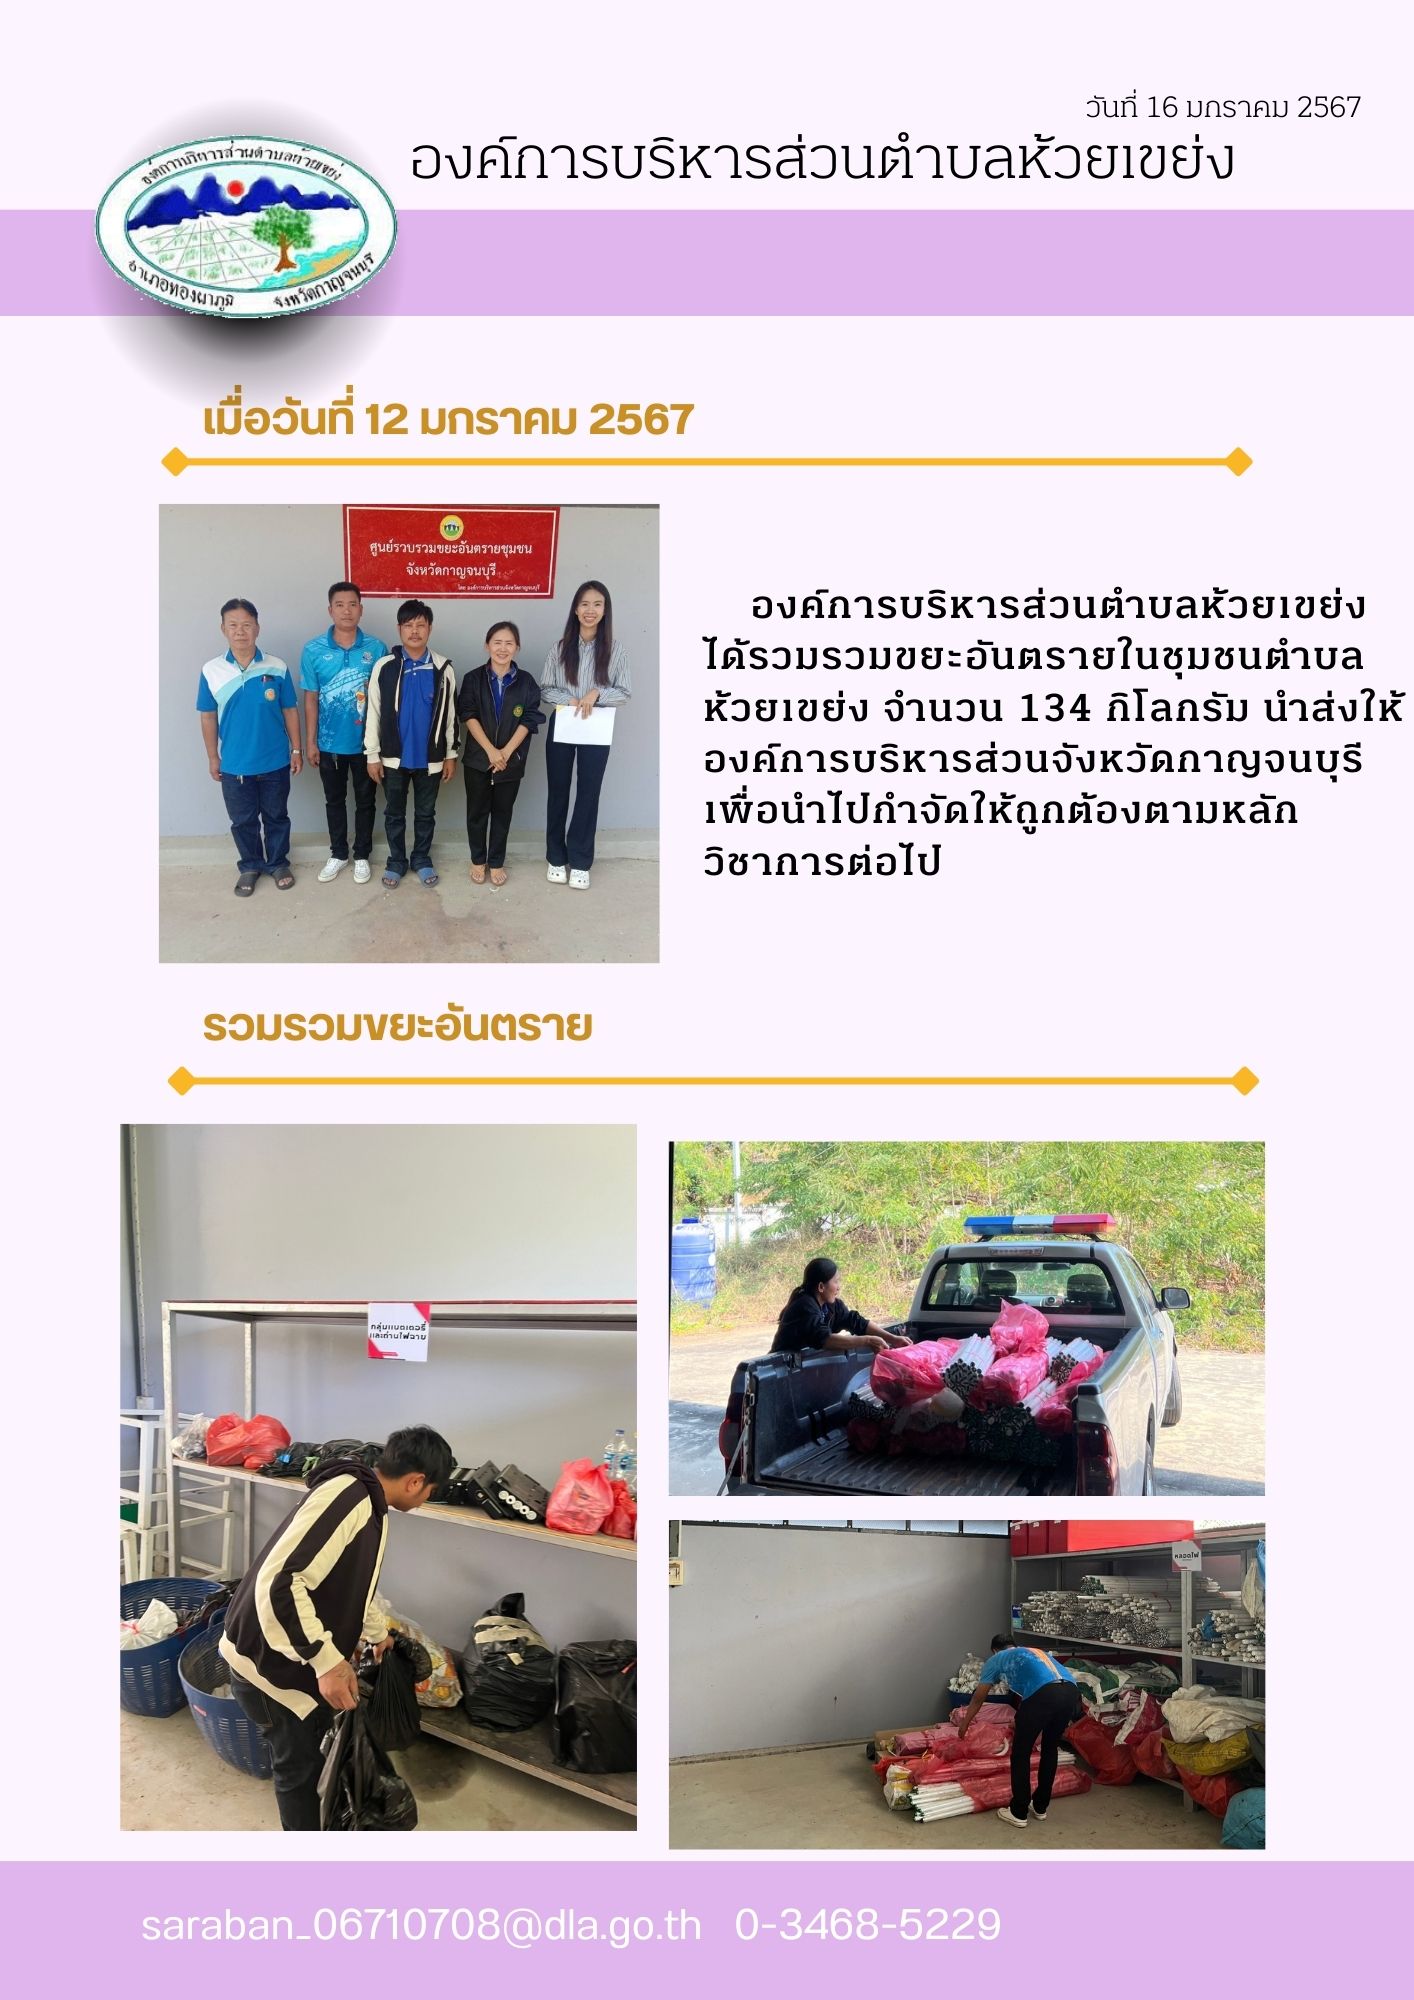 สีชมพู สีม่วง ภาพประกอบ เรียบง่าย จดหมายข่าว มหาวิทยาลัย Newsletter A4 1